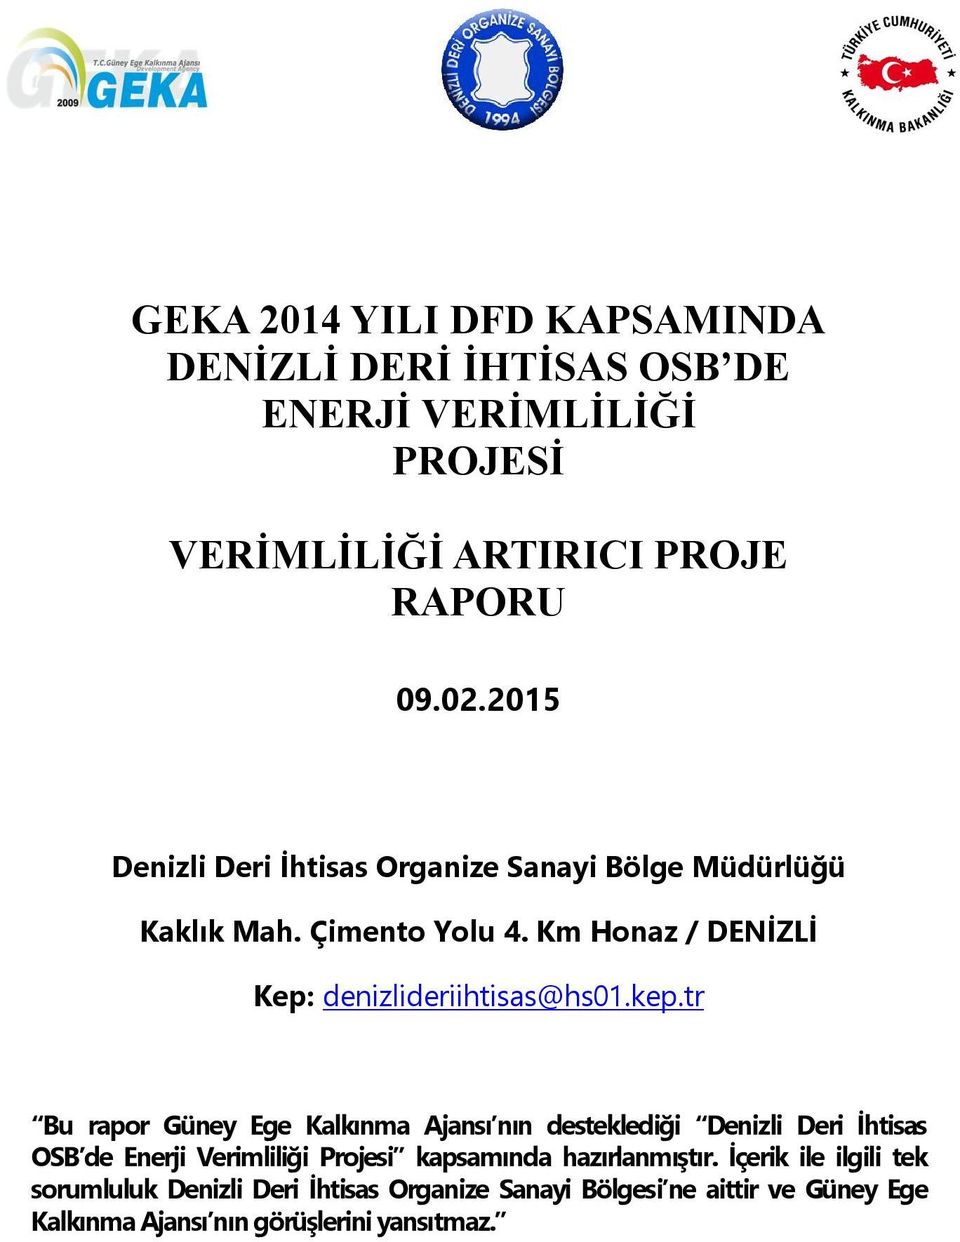 kep.tr Bu rapor Güney Ege Kalkınma Ajansı nın desteklediği Denizli Deri İhtisas OSB de Enerji Verimliliği Projesi kapsamında